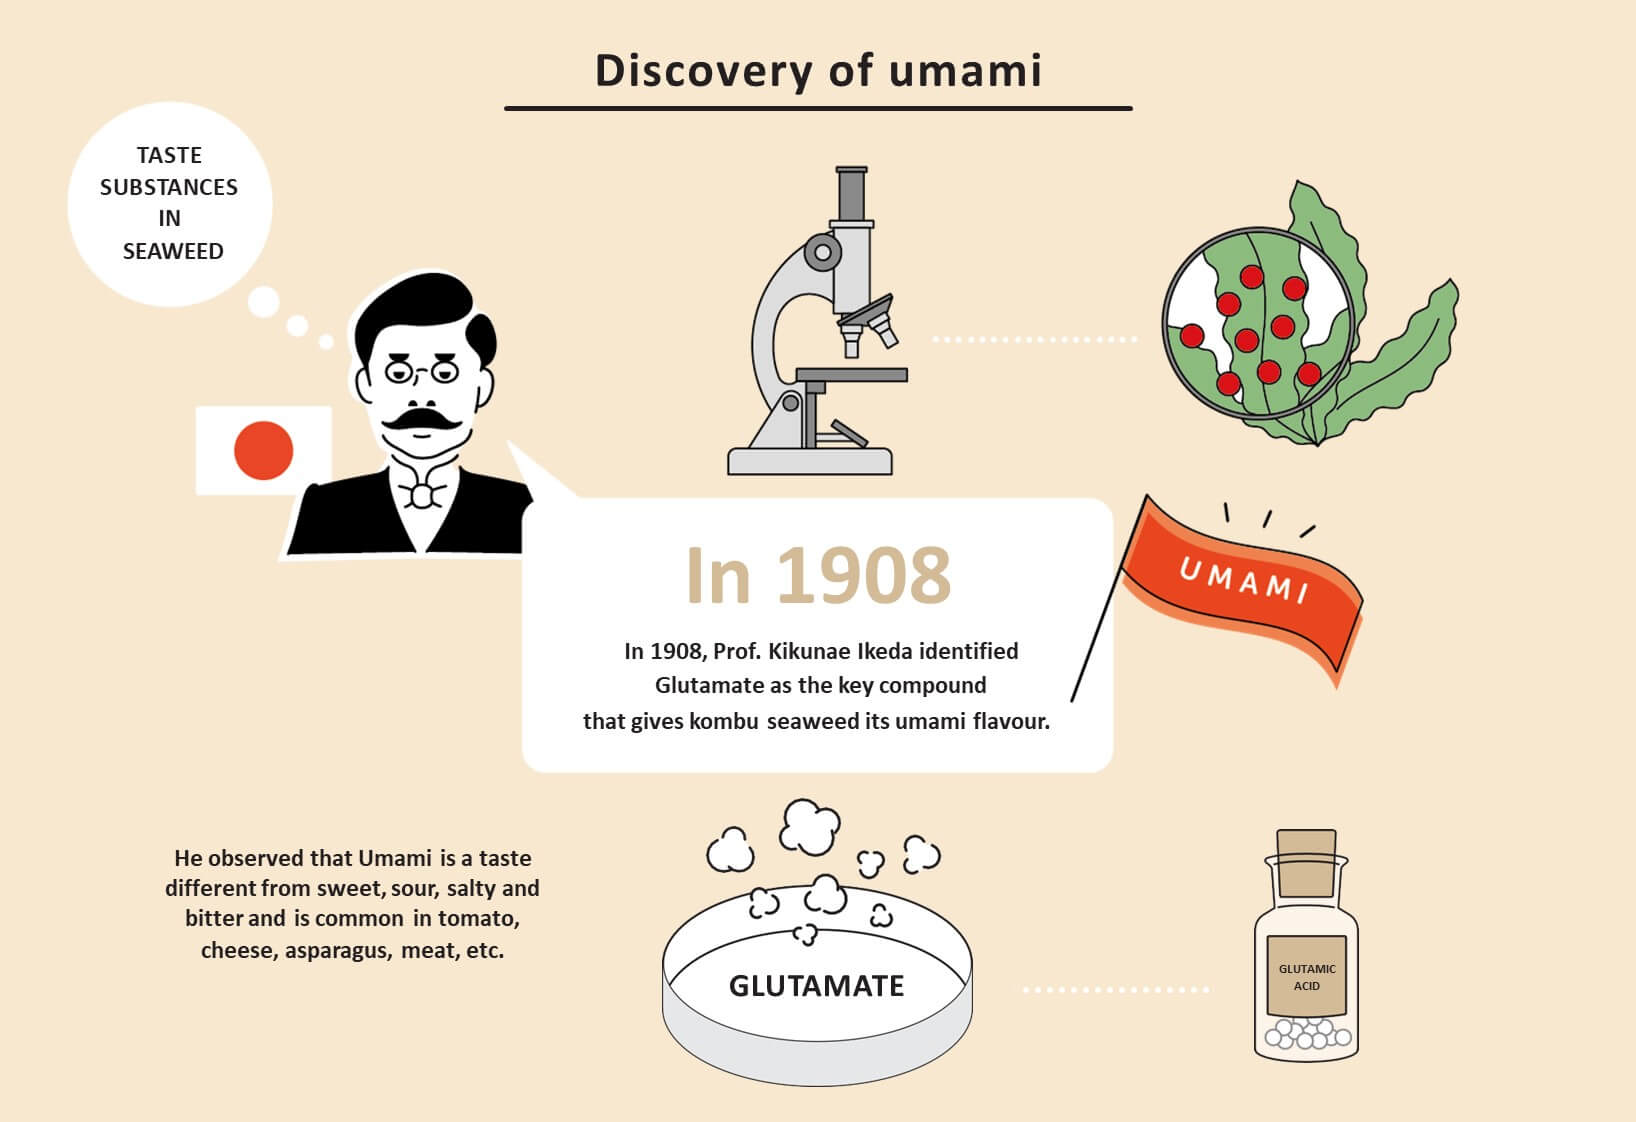 En 1908, el profesor Kikunae Ikeda identificó el glutamato como el compuesto clave que le da al alga kombu su sabor umami.